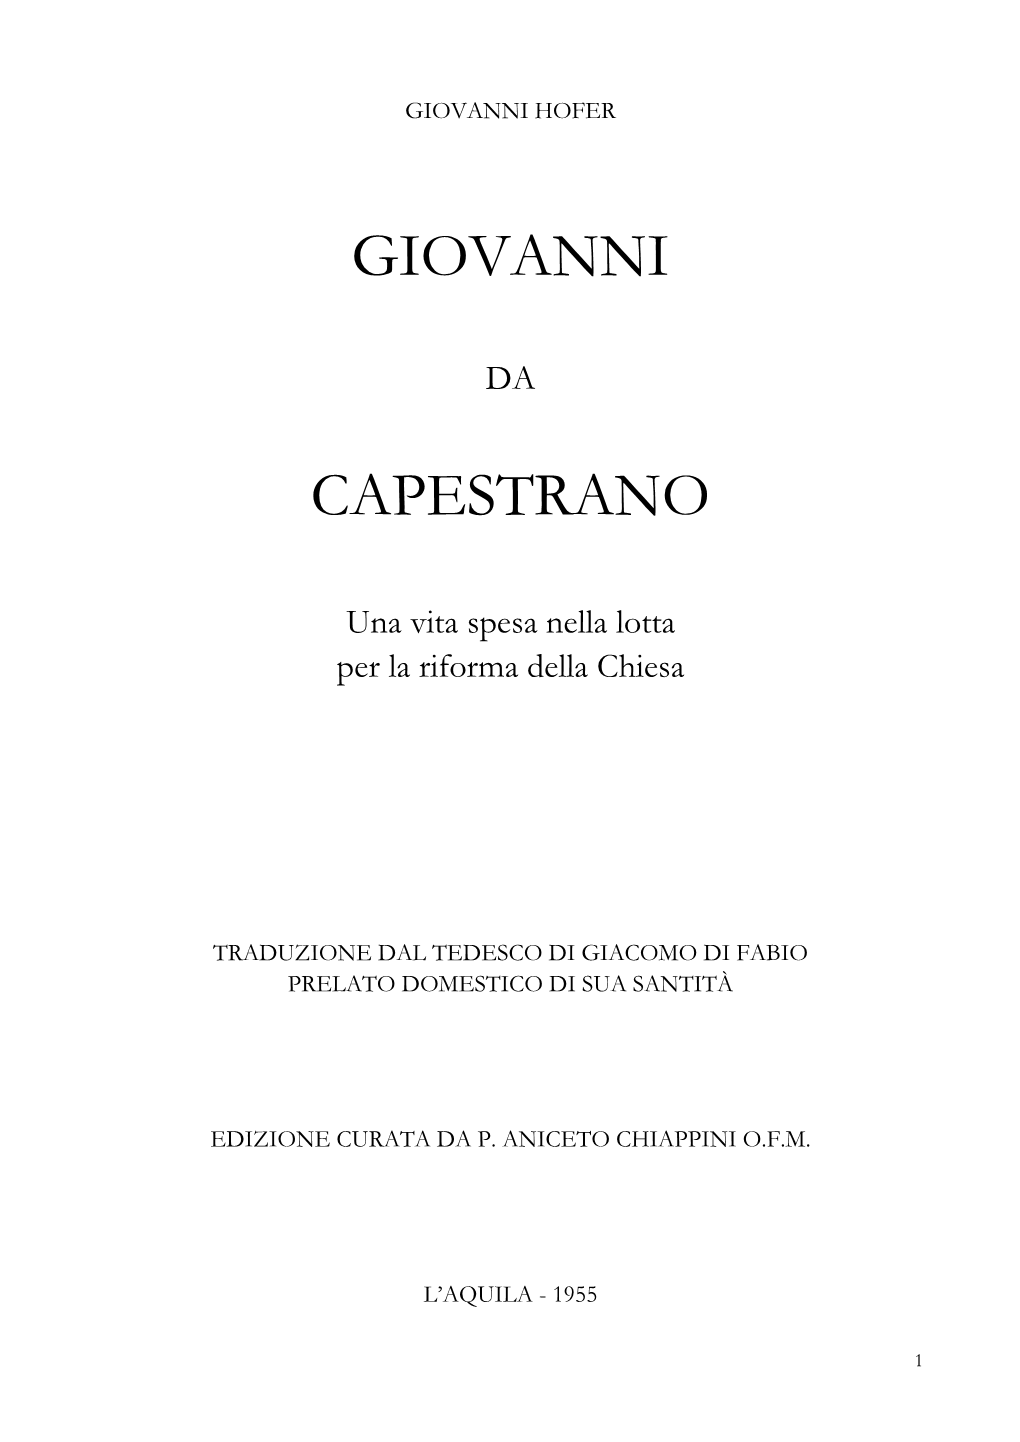 Giovanni Capestrano